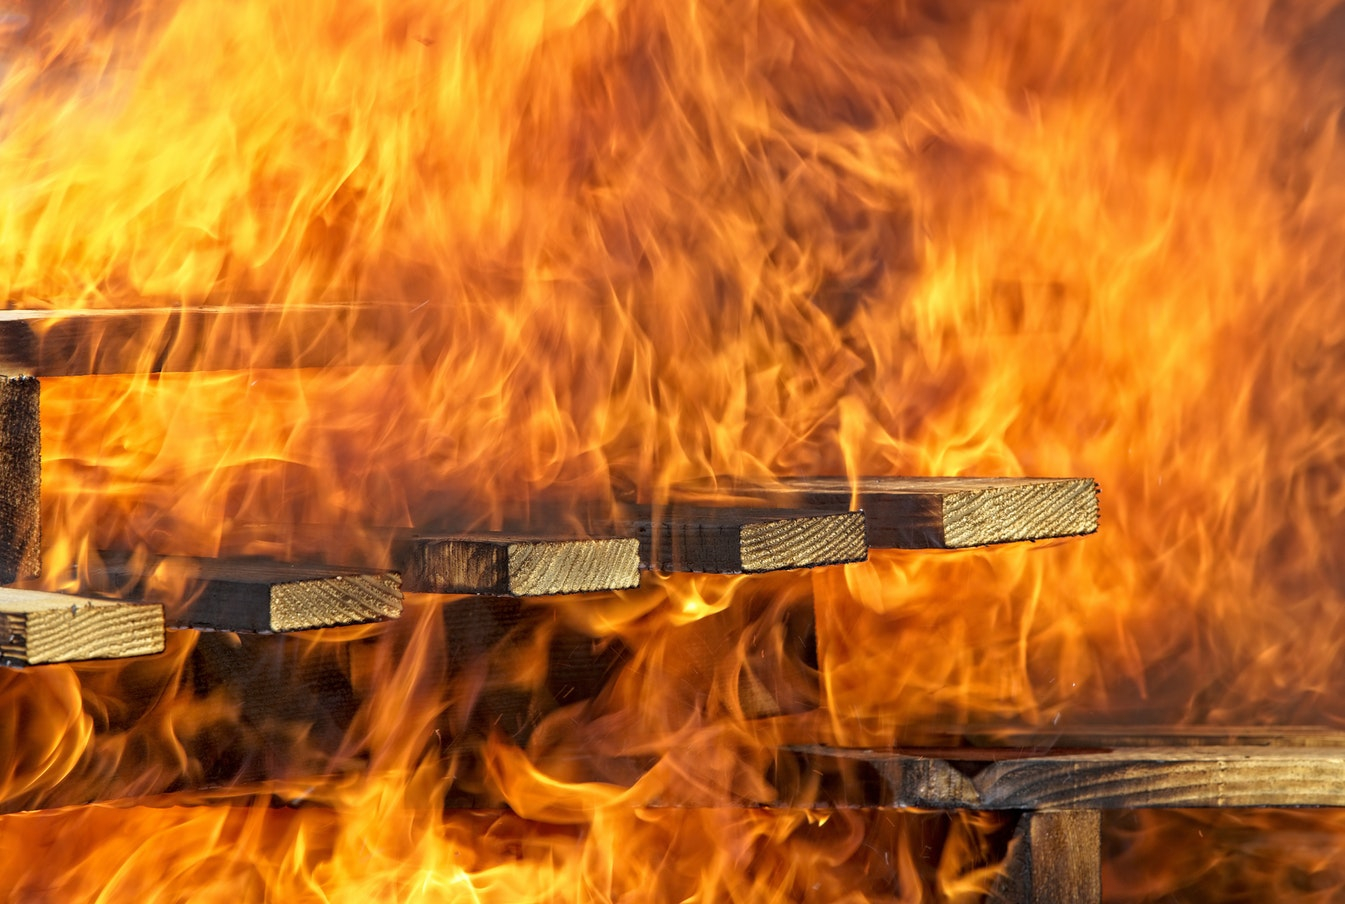 Смертельный огонь: в пожаре погибла йошкаролинка